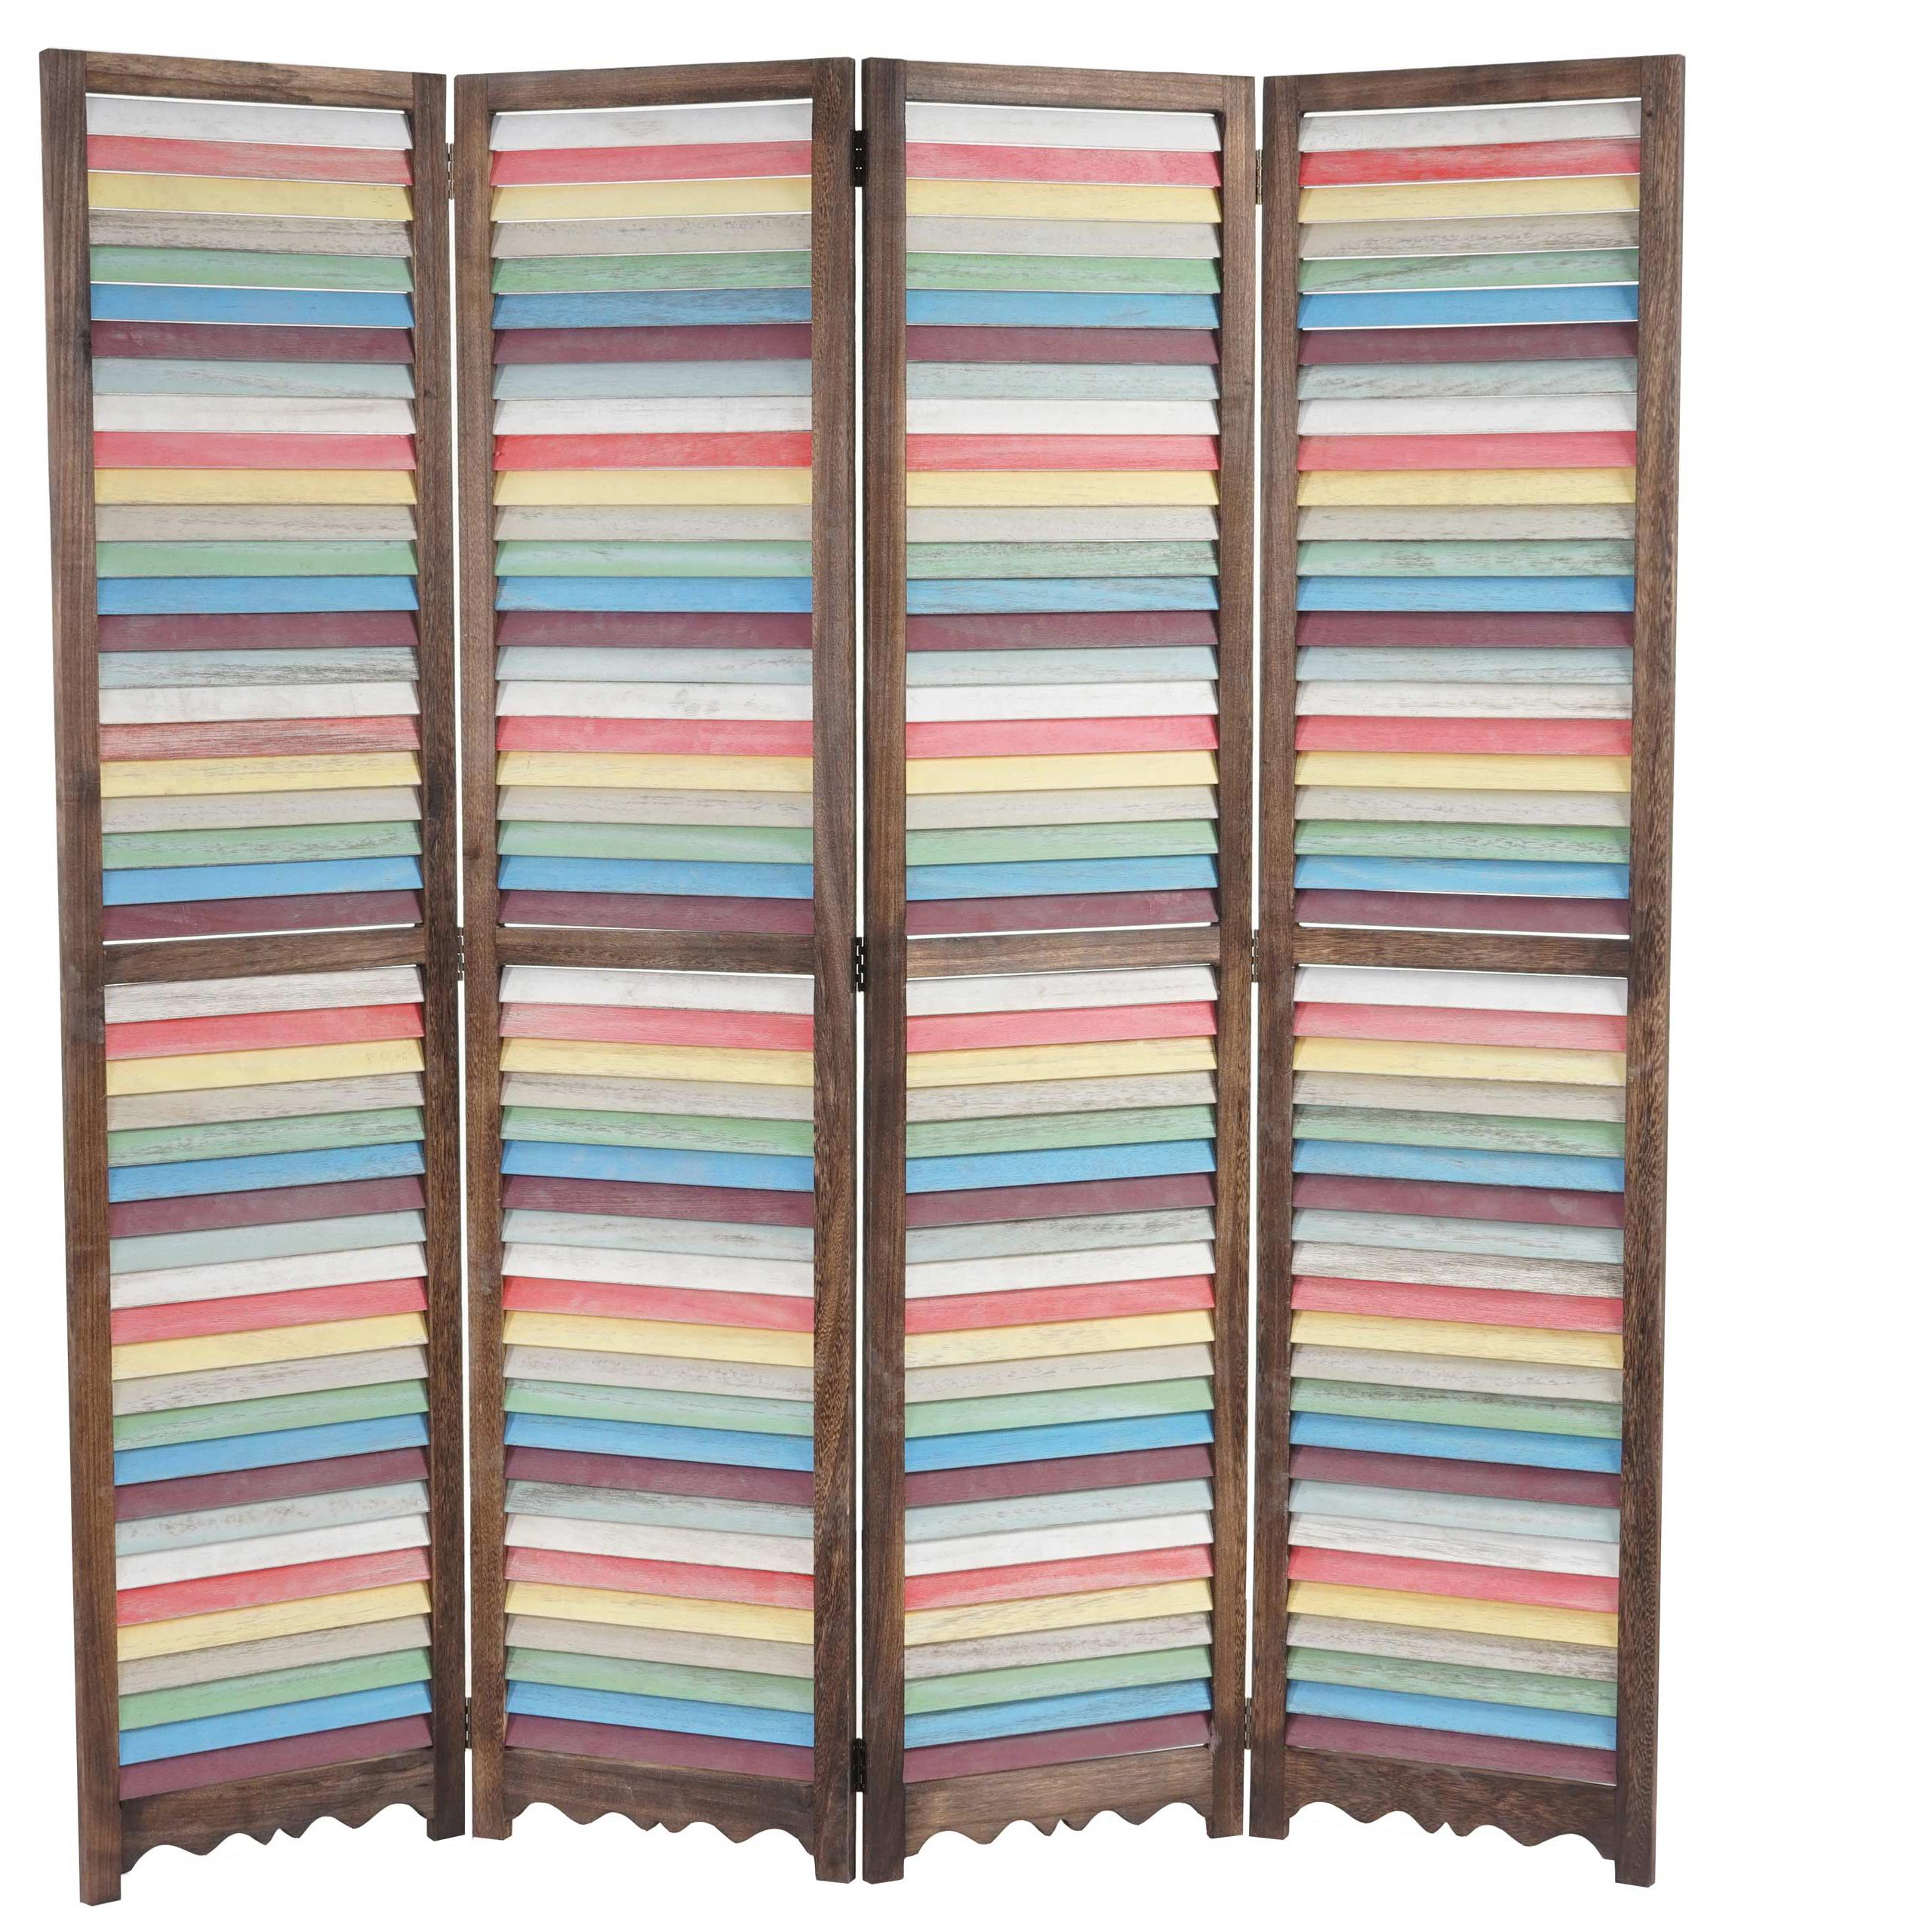 Biombo 4 paneles GERD, 170x160x2cm, Estructura de Madera en Marrón y Multicolor